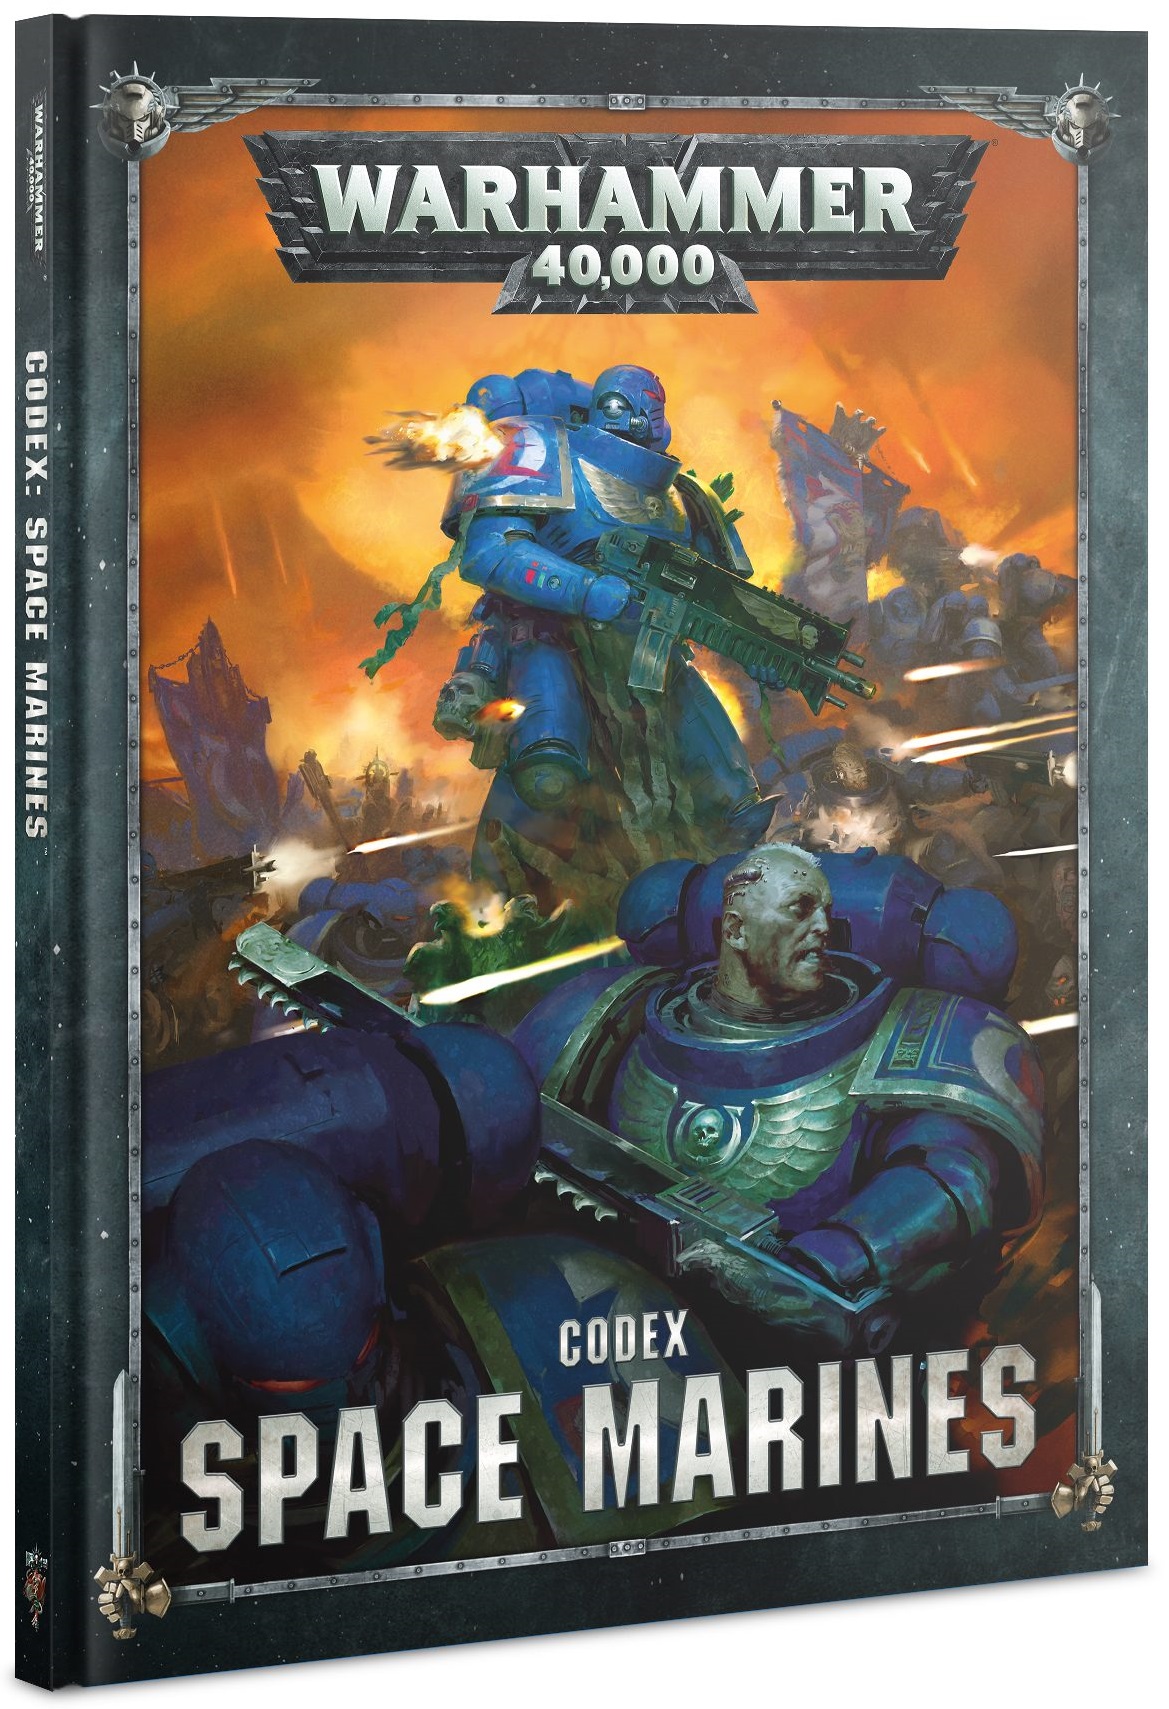 warhammer 40k 9th edition codex release schedule